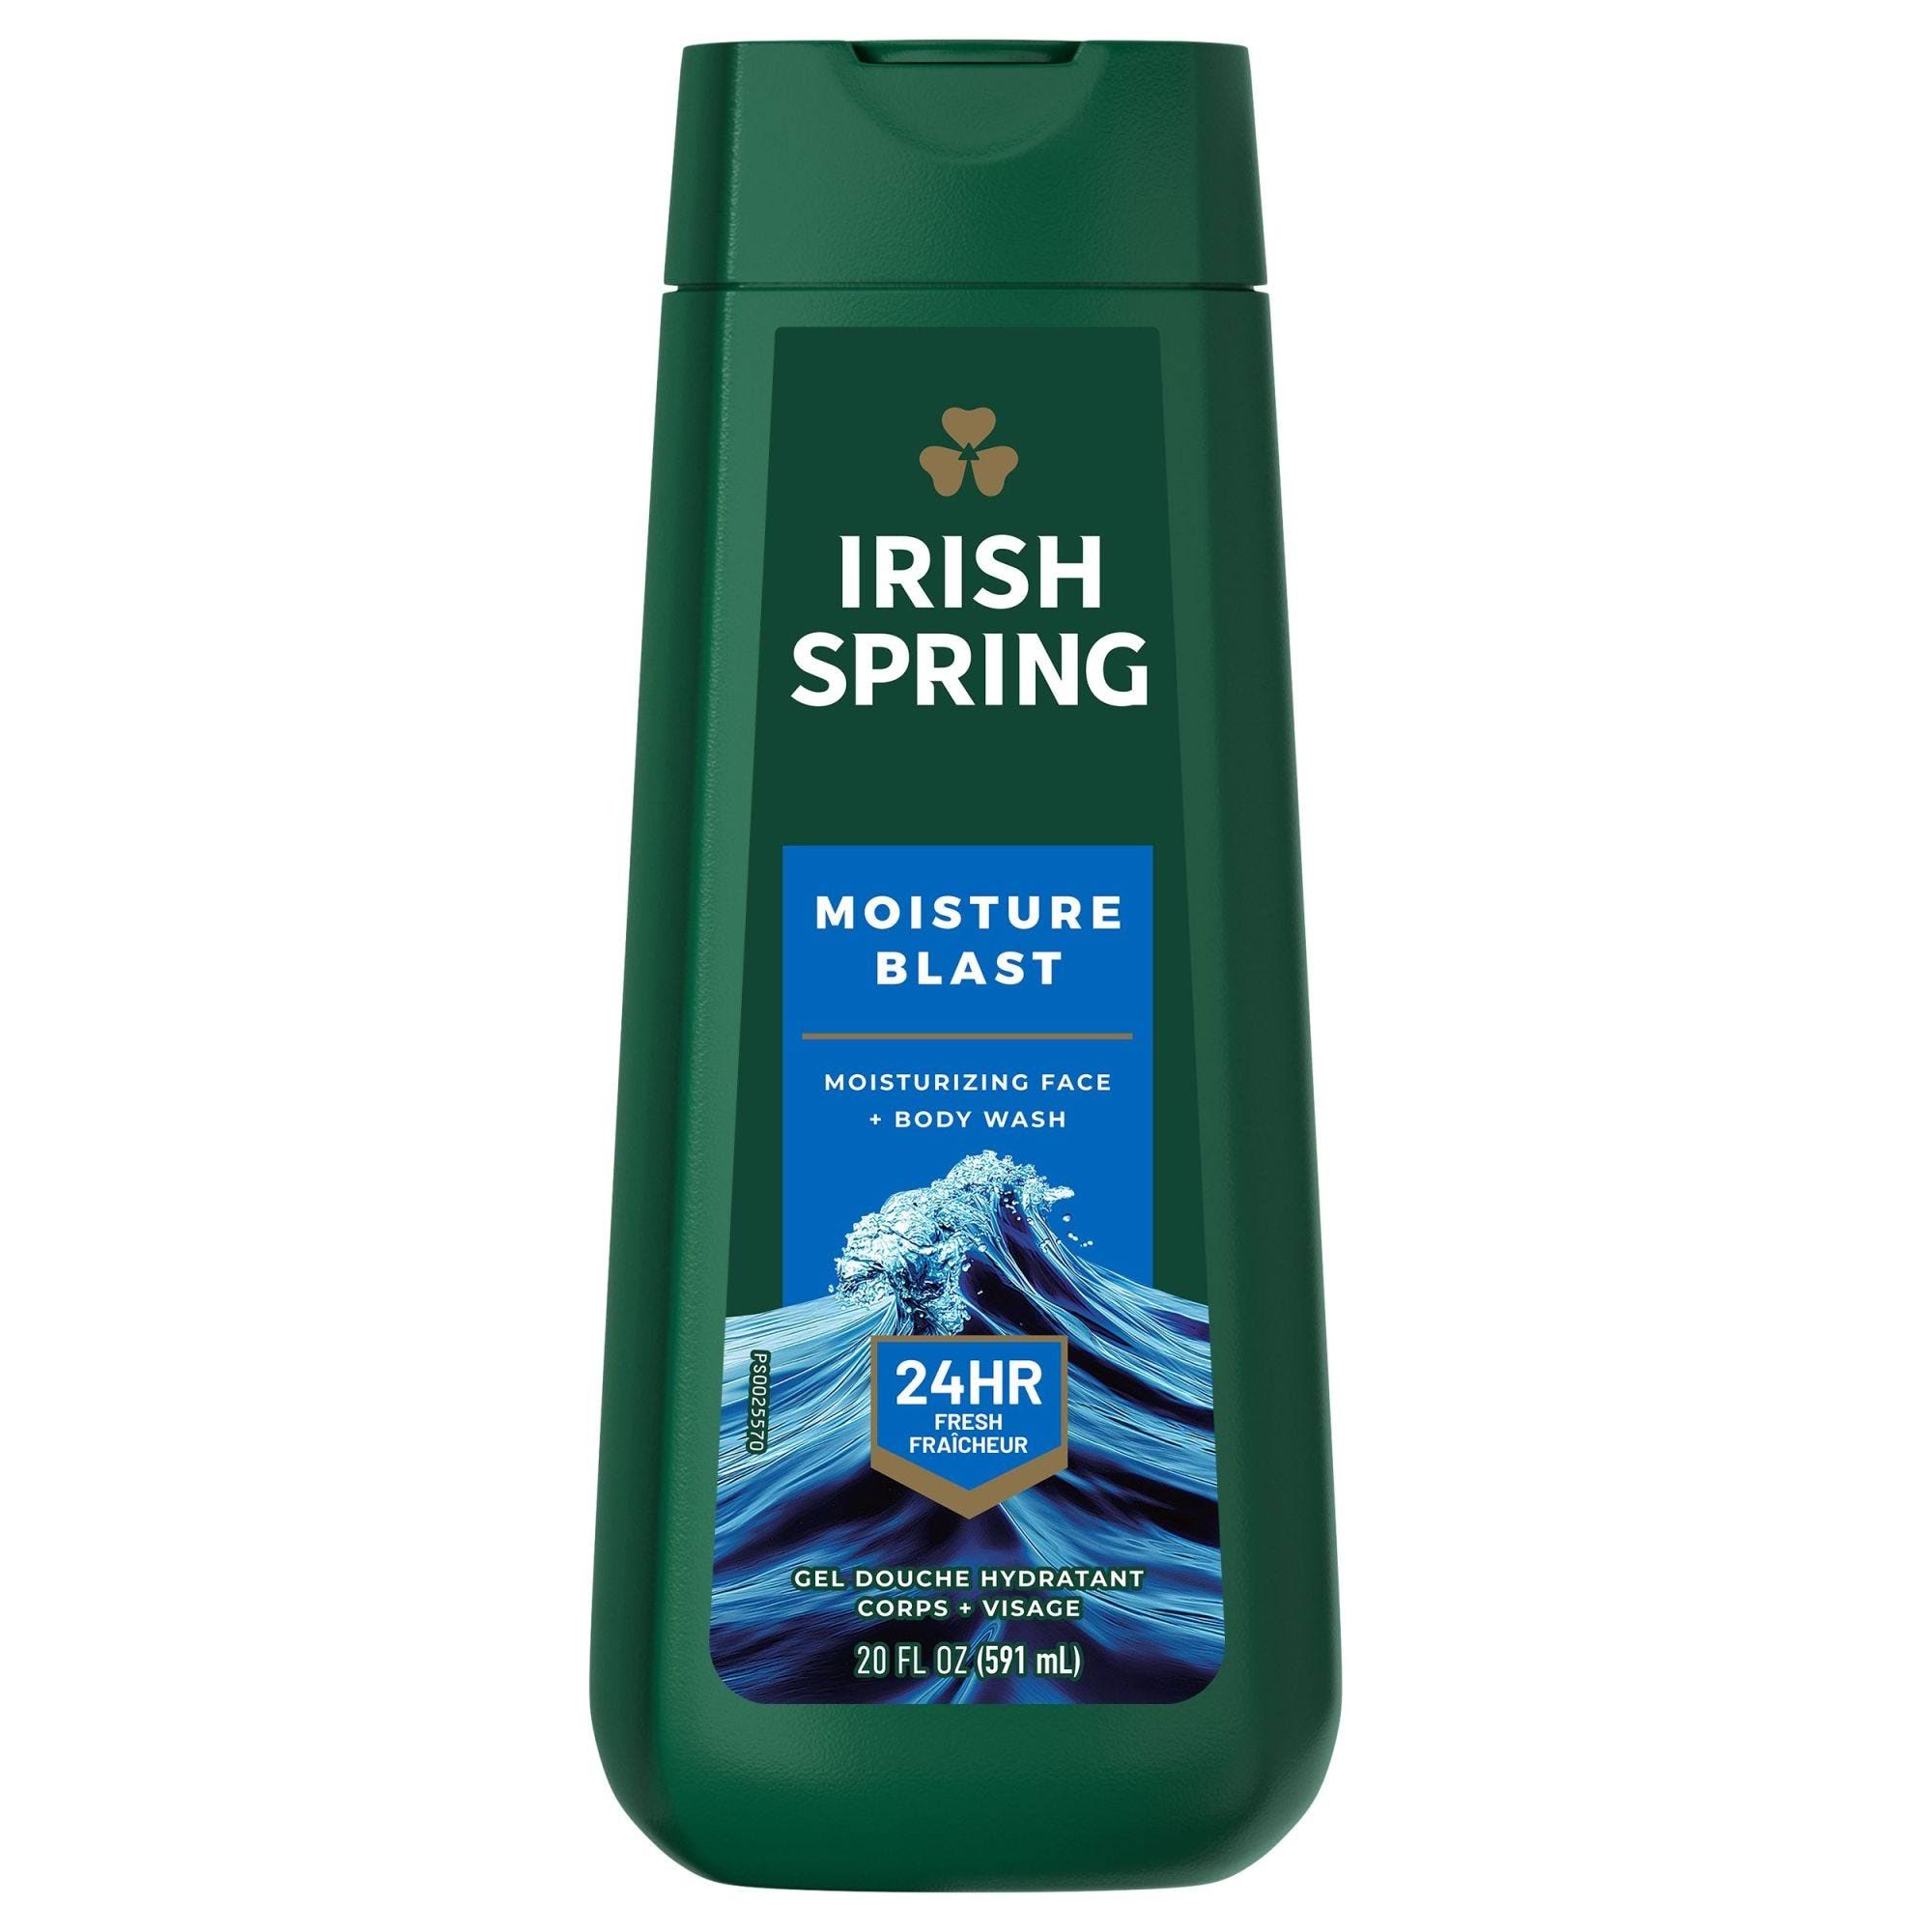 Irish Spring Moisture Blast Body Wash for Men - 20 fl oz